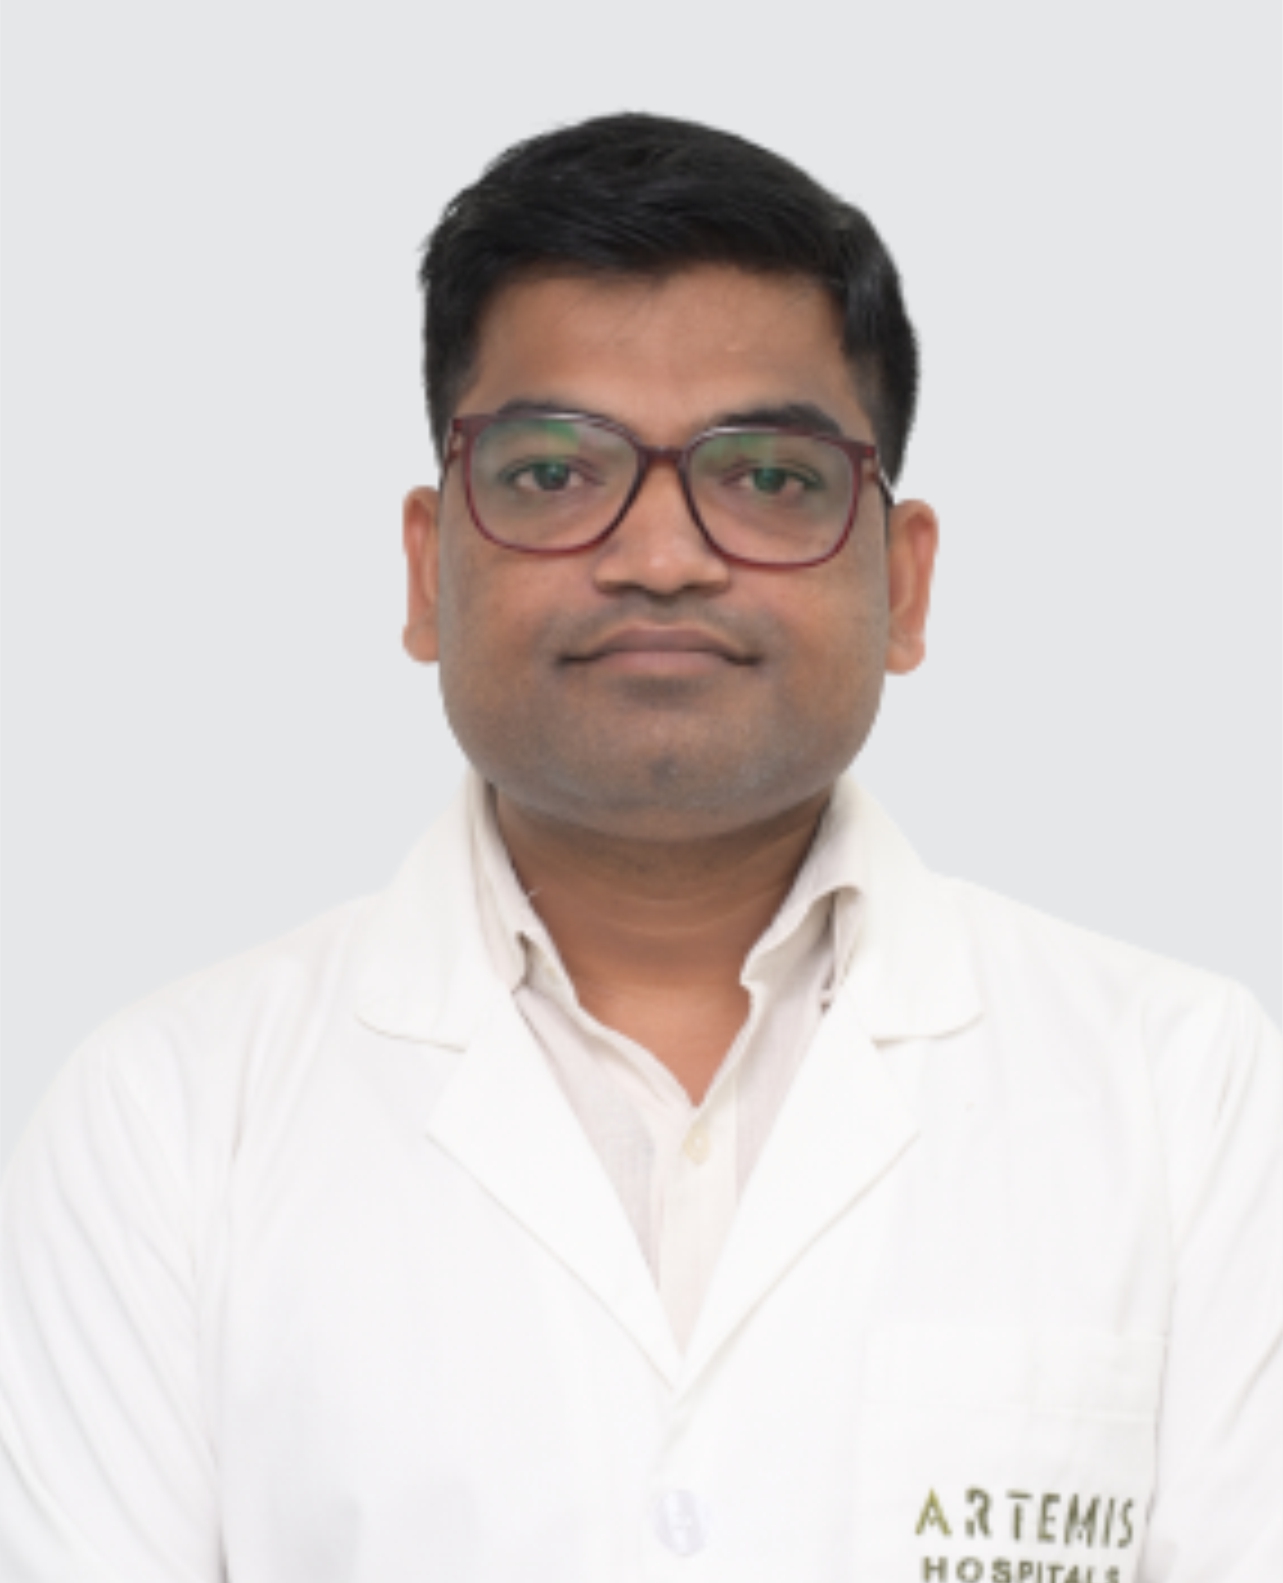 Dr. Mukesh Patekar